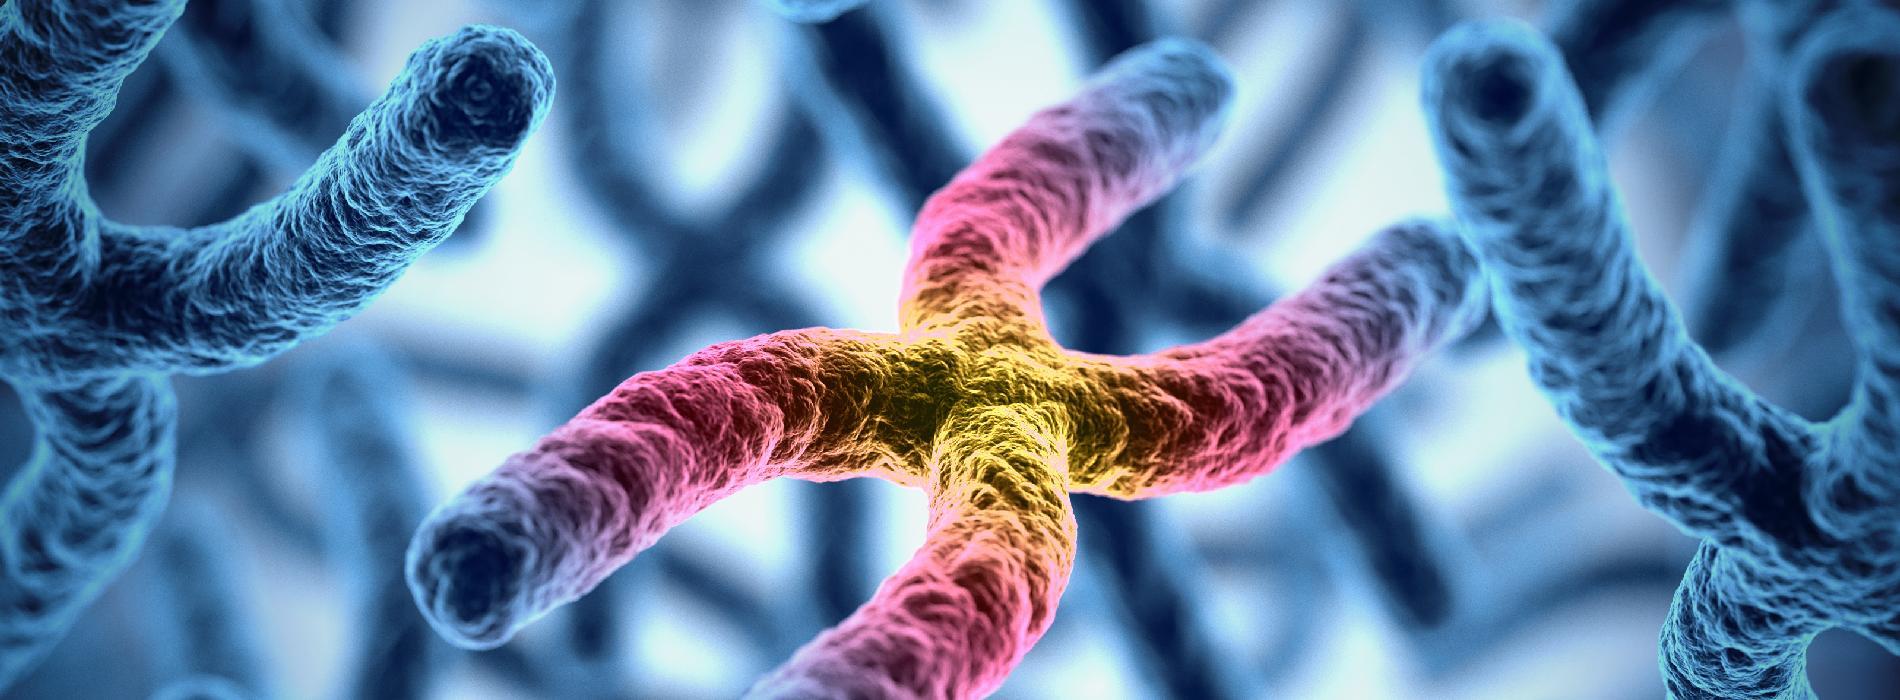 Zespół łamliwego chromosomu X - przyczyny, objawy, diagnostyka i leczenie